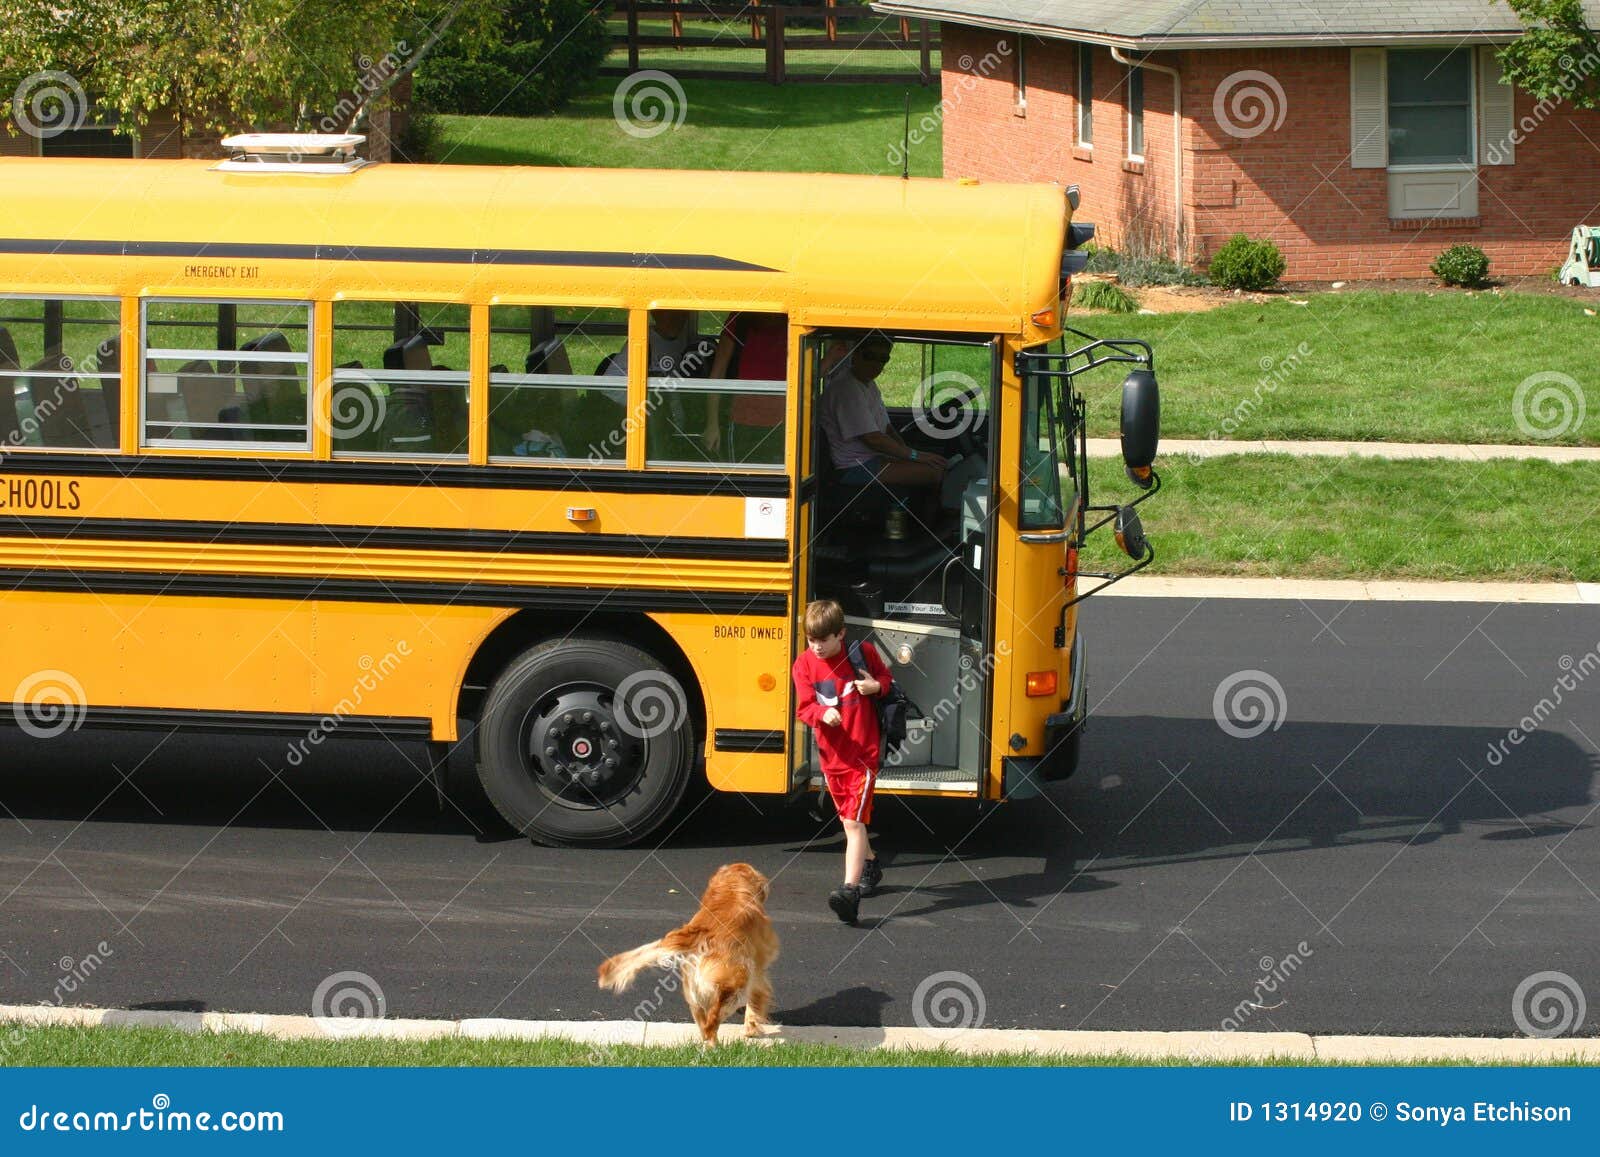 boy getting off school bus